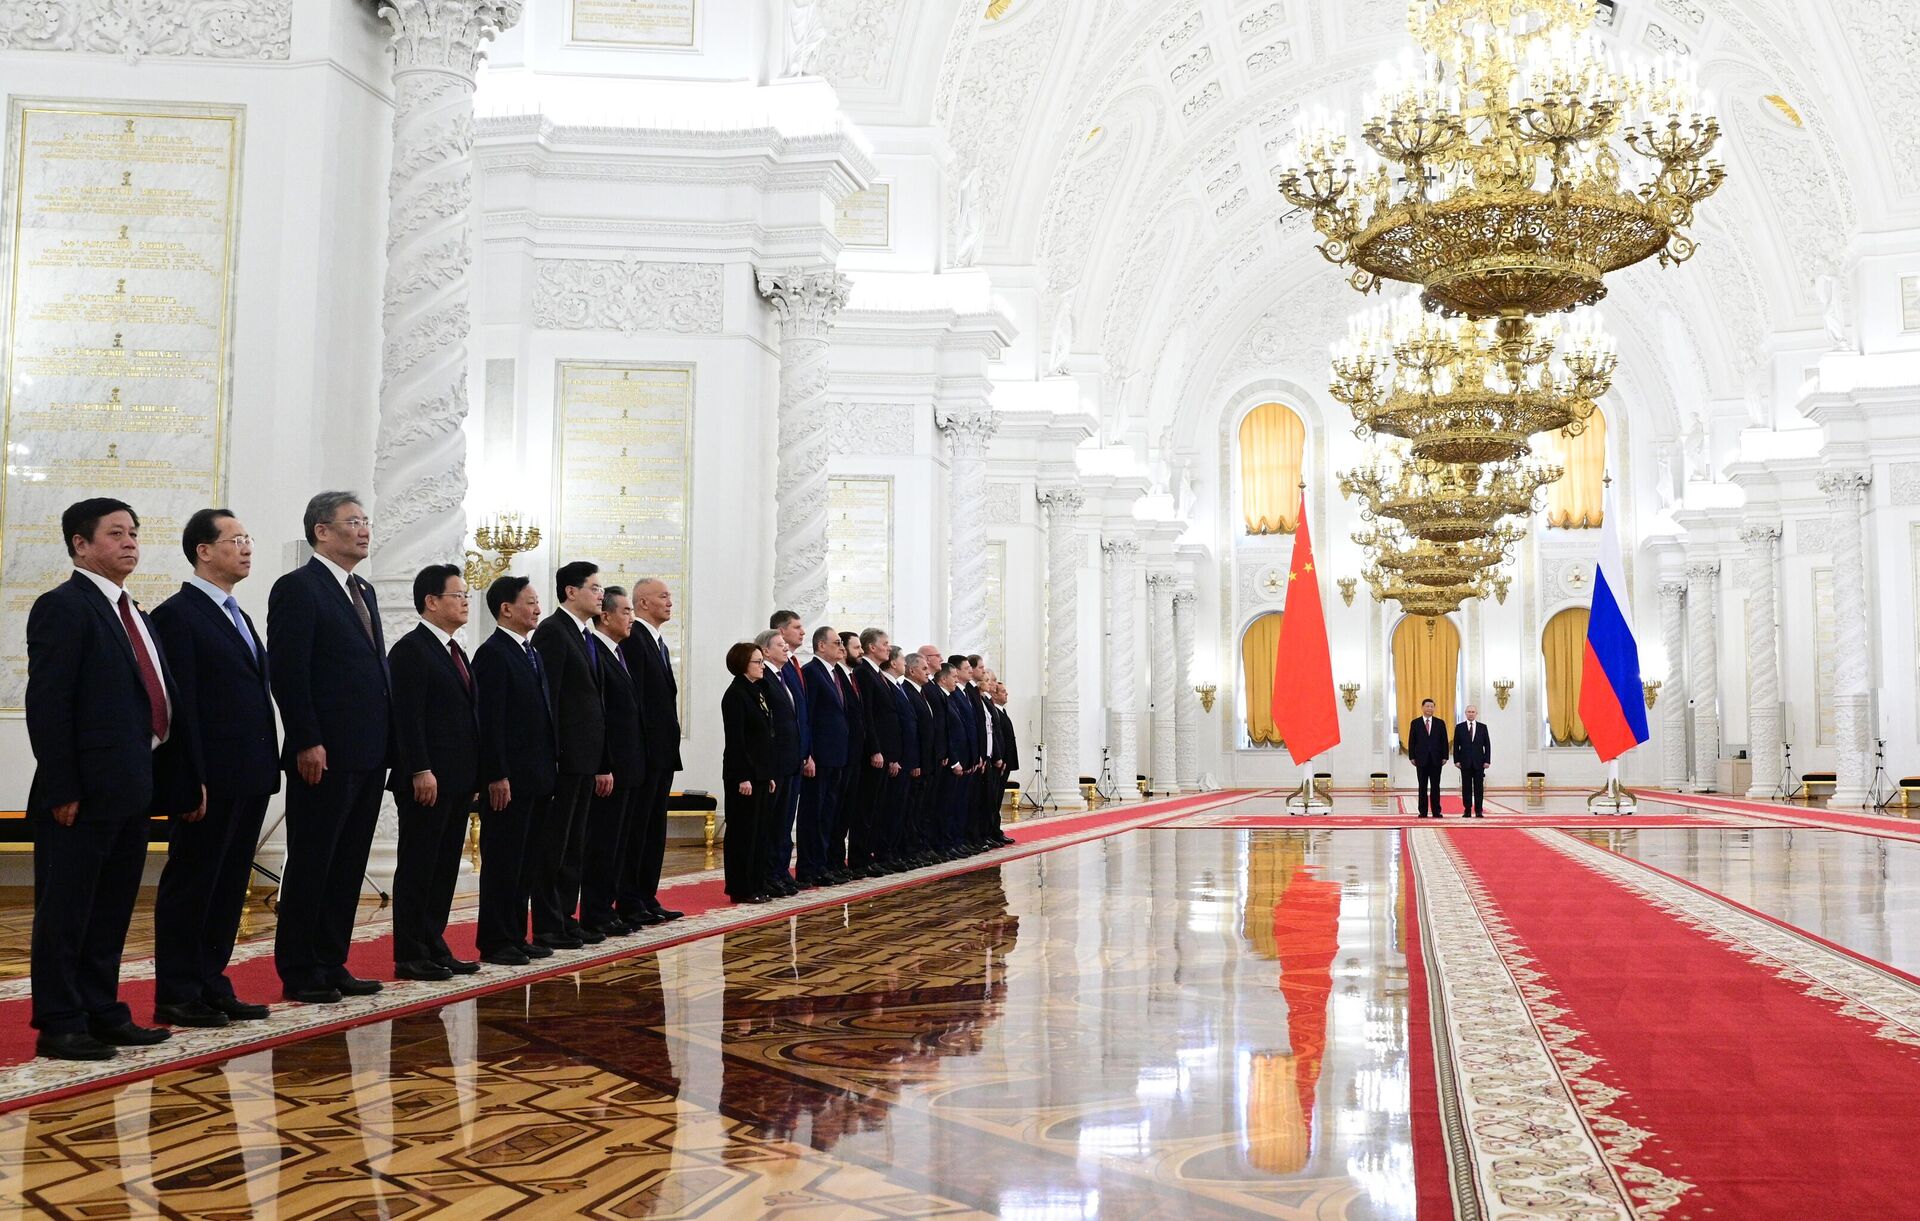 21/2/2023, Tổng thống Nga Vladimir Putin, Chủ tịch Trung Quốc Tập Cận Bình và đại diện các phái đoàn trong cuộc gặp tại Moskva. - Sputnik Việt Nam, 1920, 22.03.2023